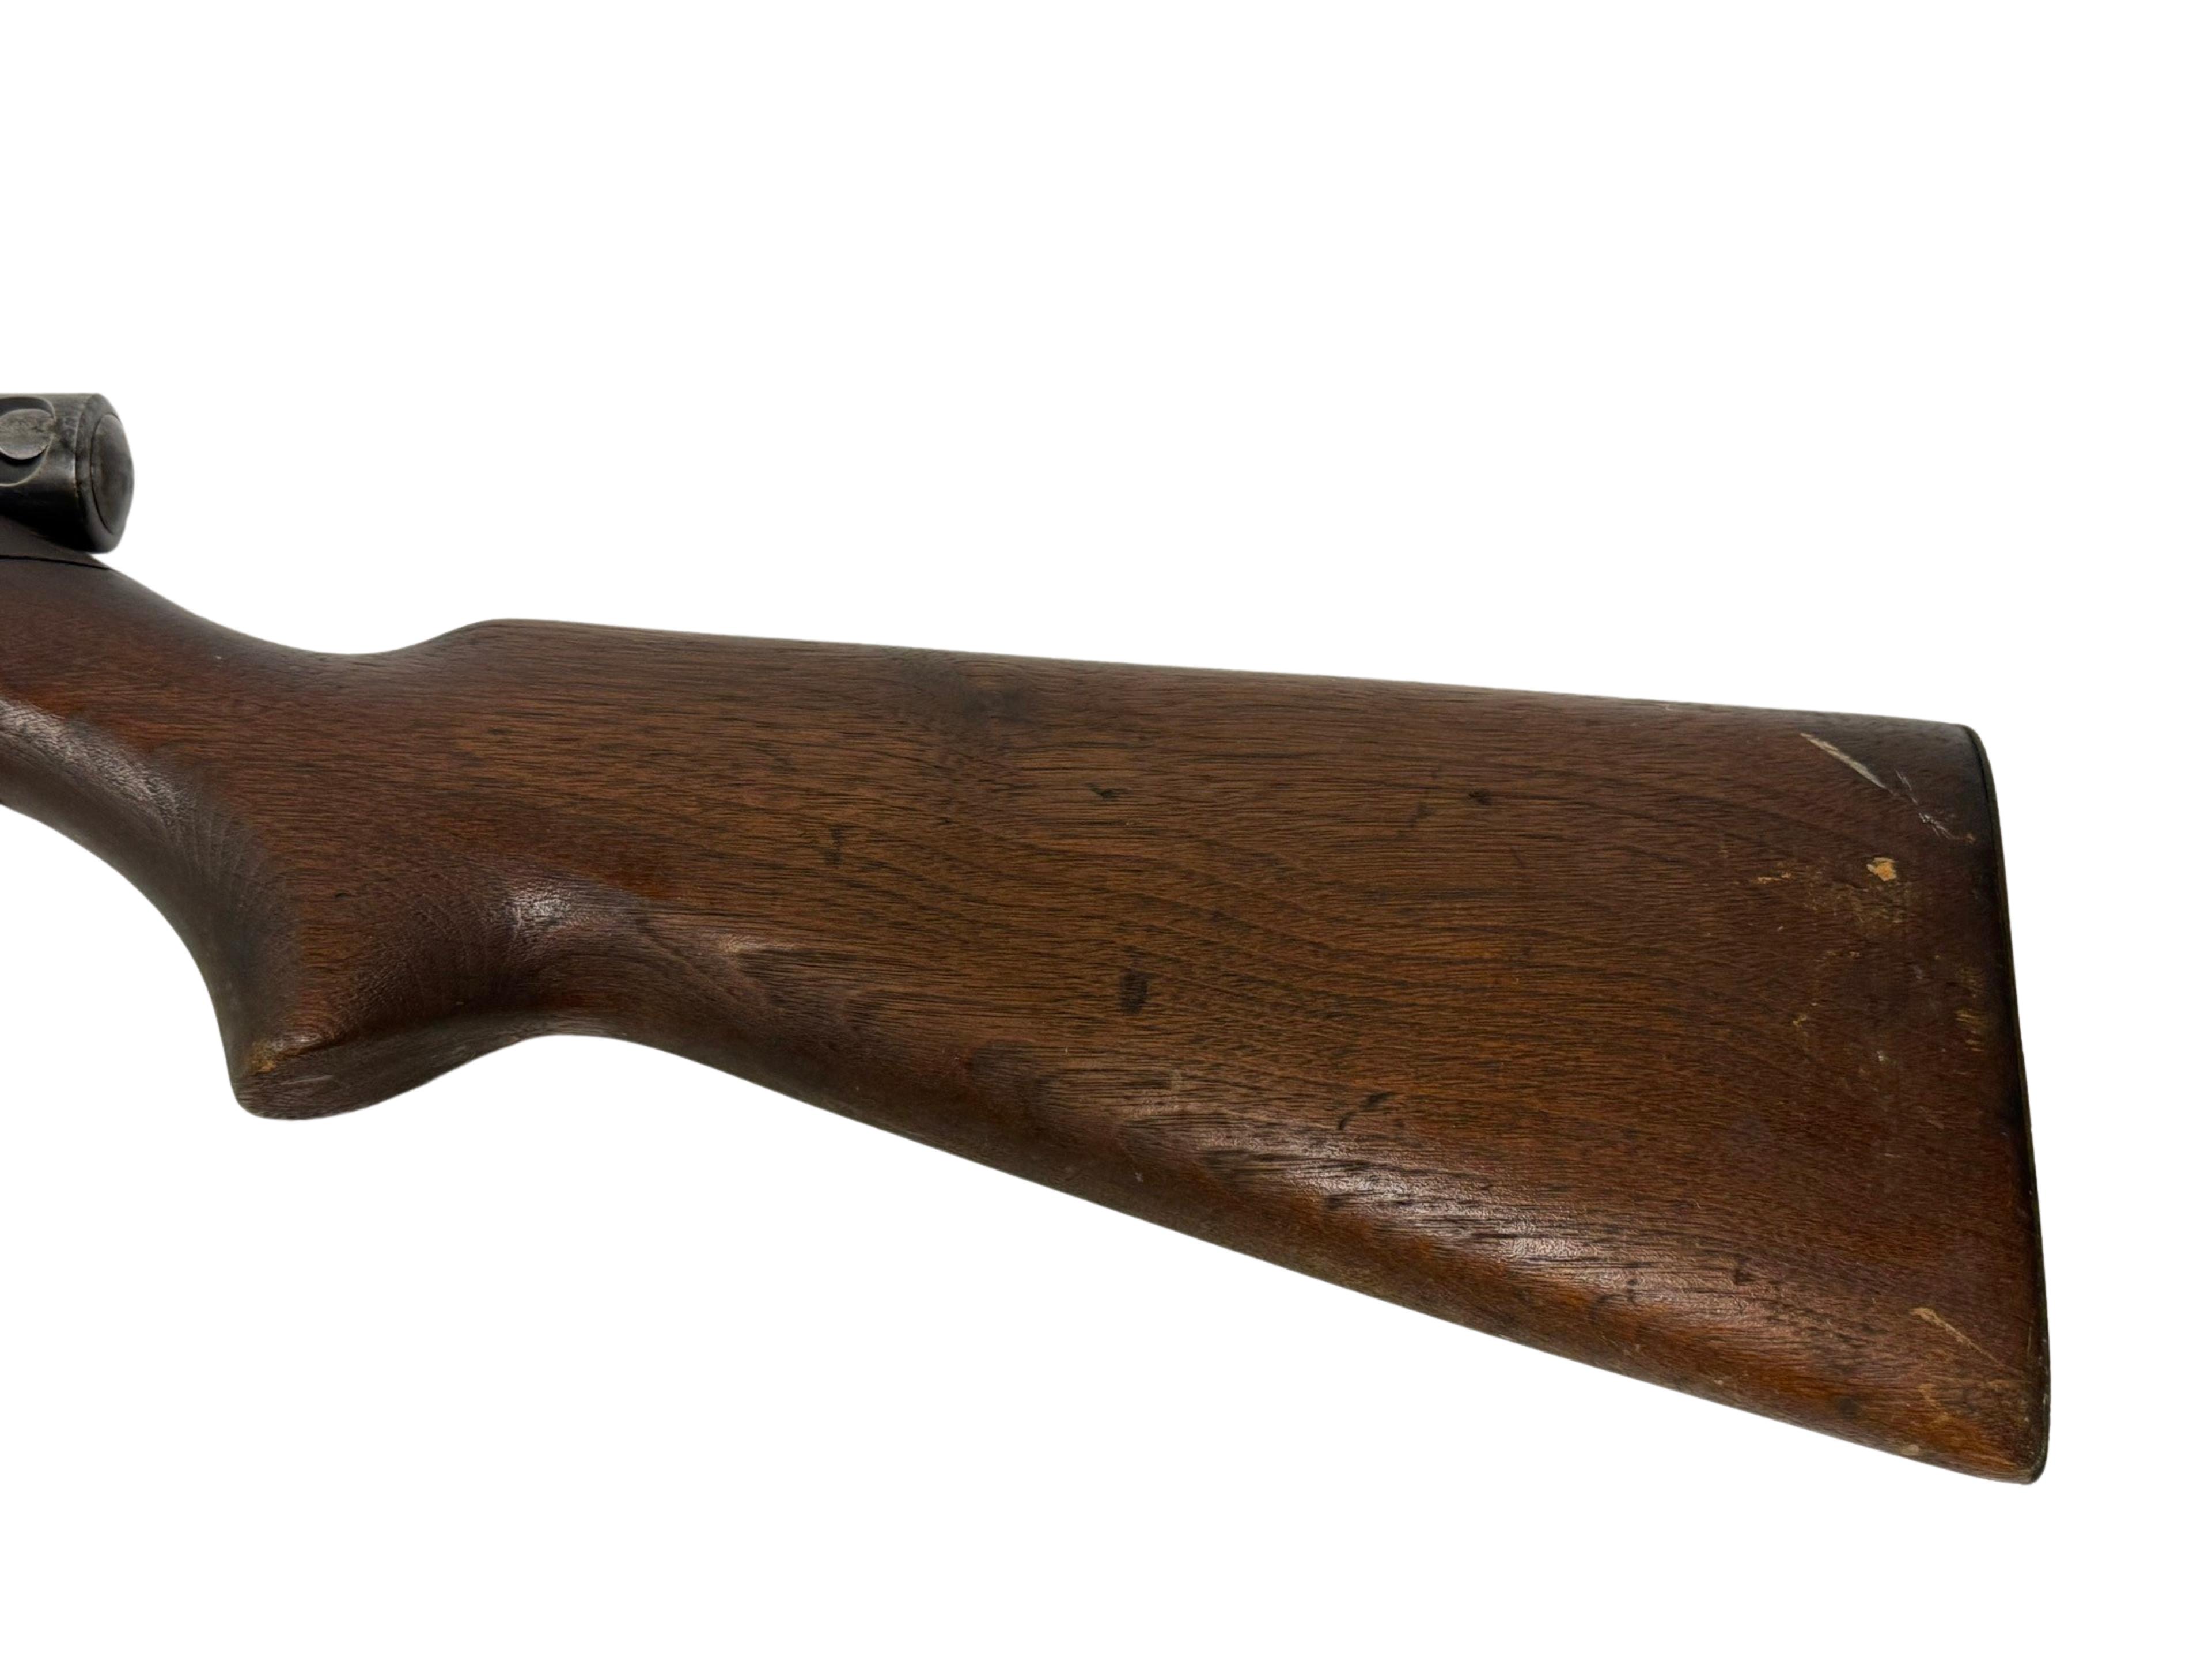 Winchester Model 74 .22 LR Semi-Automatic Rifle